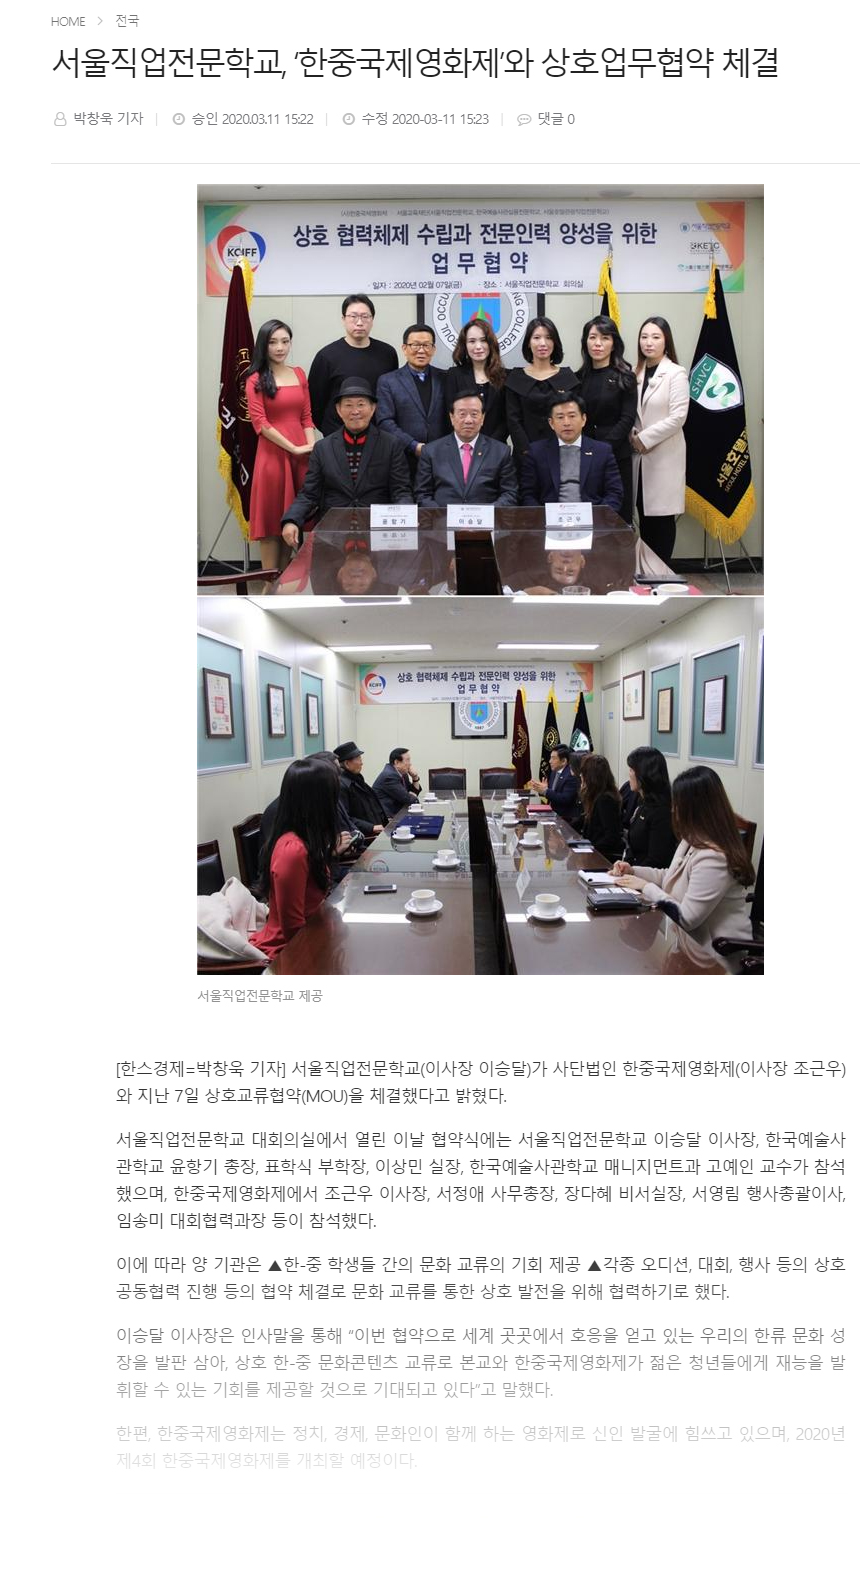 [한스경제] 서울직업전문학교, ‘한중국제영화제’와 상호업무협약 체결